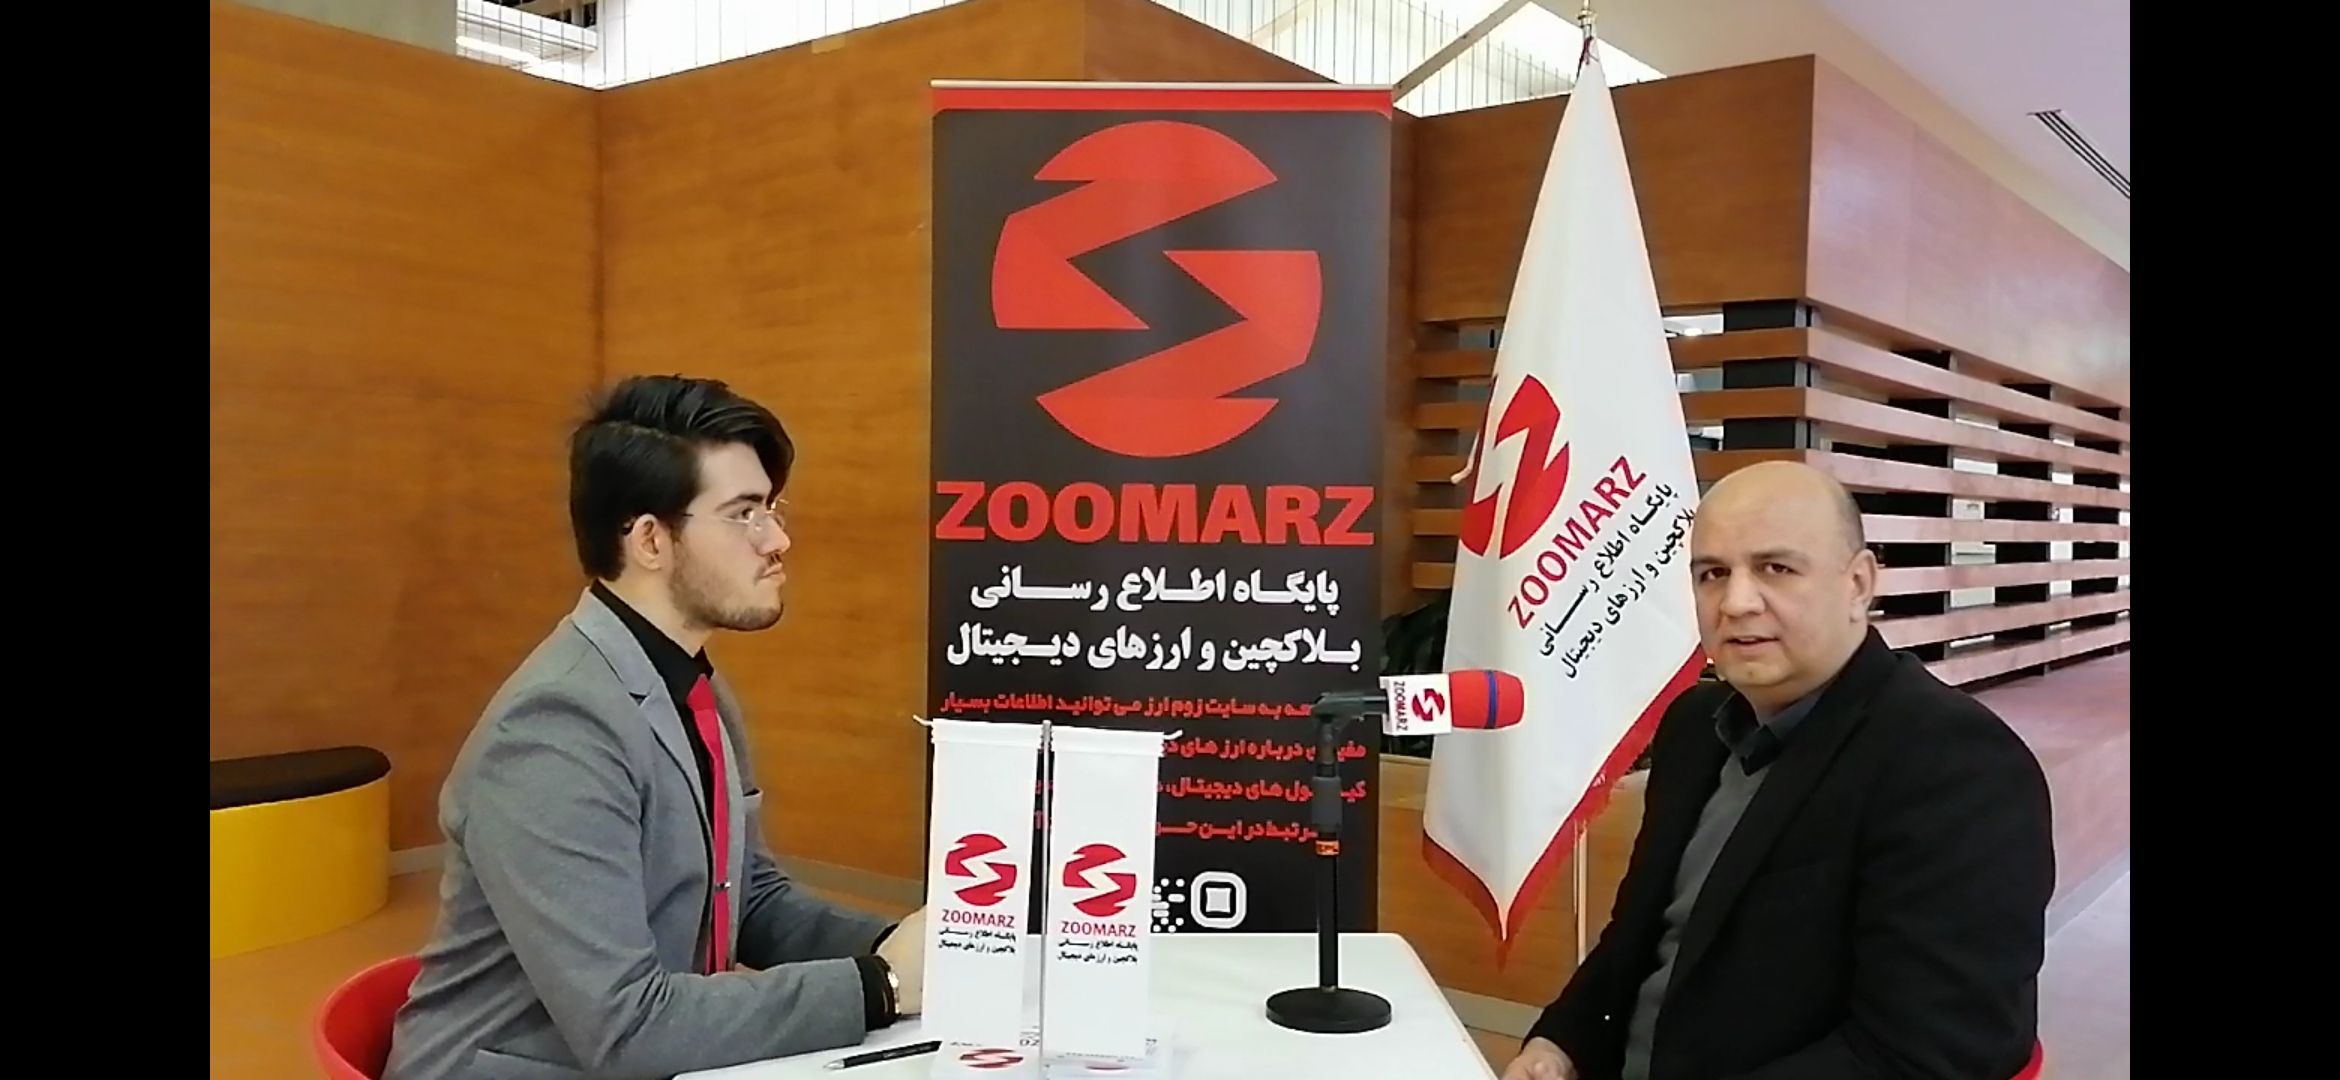 آقای اصلانی مدیر بیمه کارآفرینی اصفهان و فعال و علاقه مند به بازار ارزهای دیجیتال